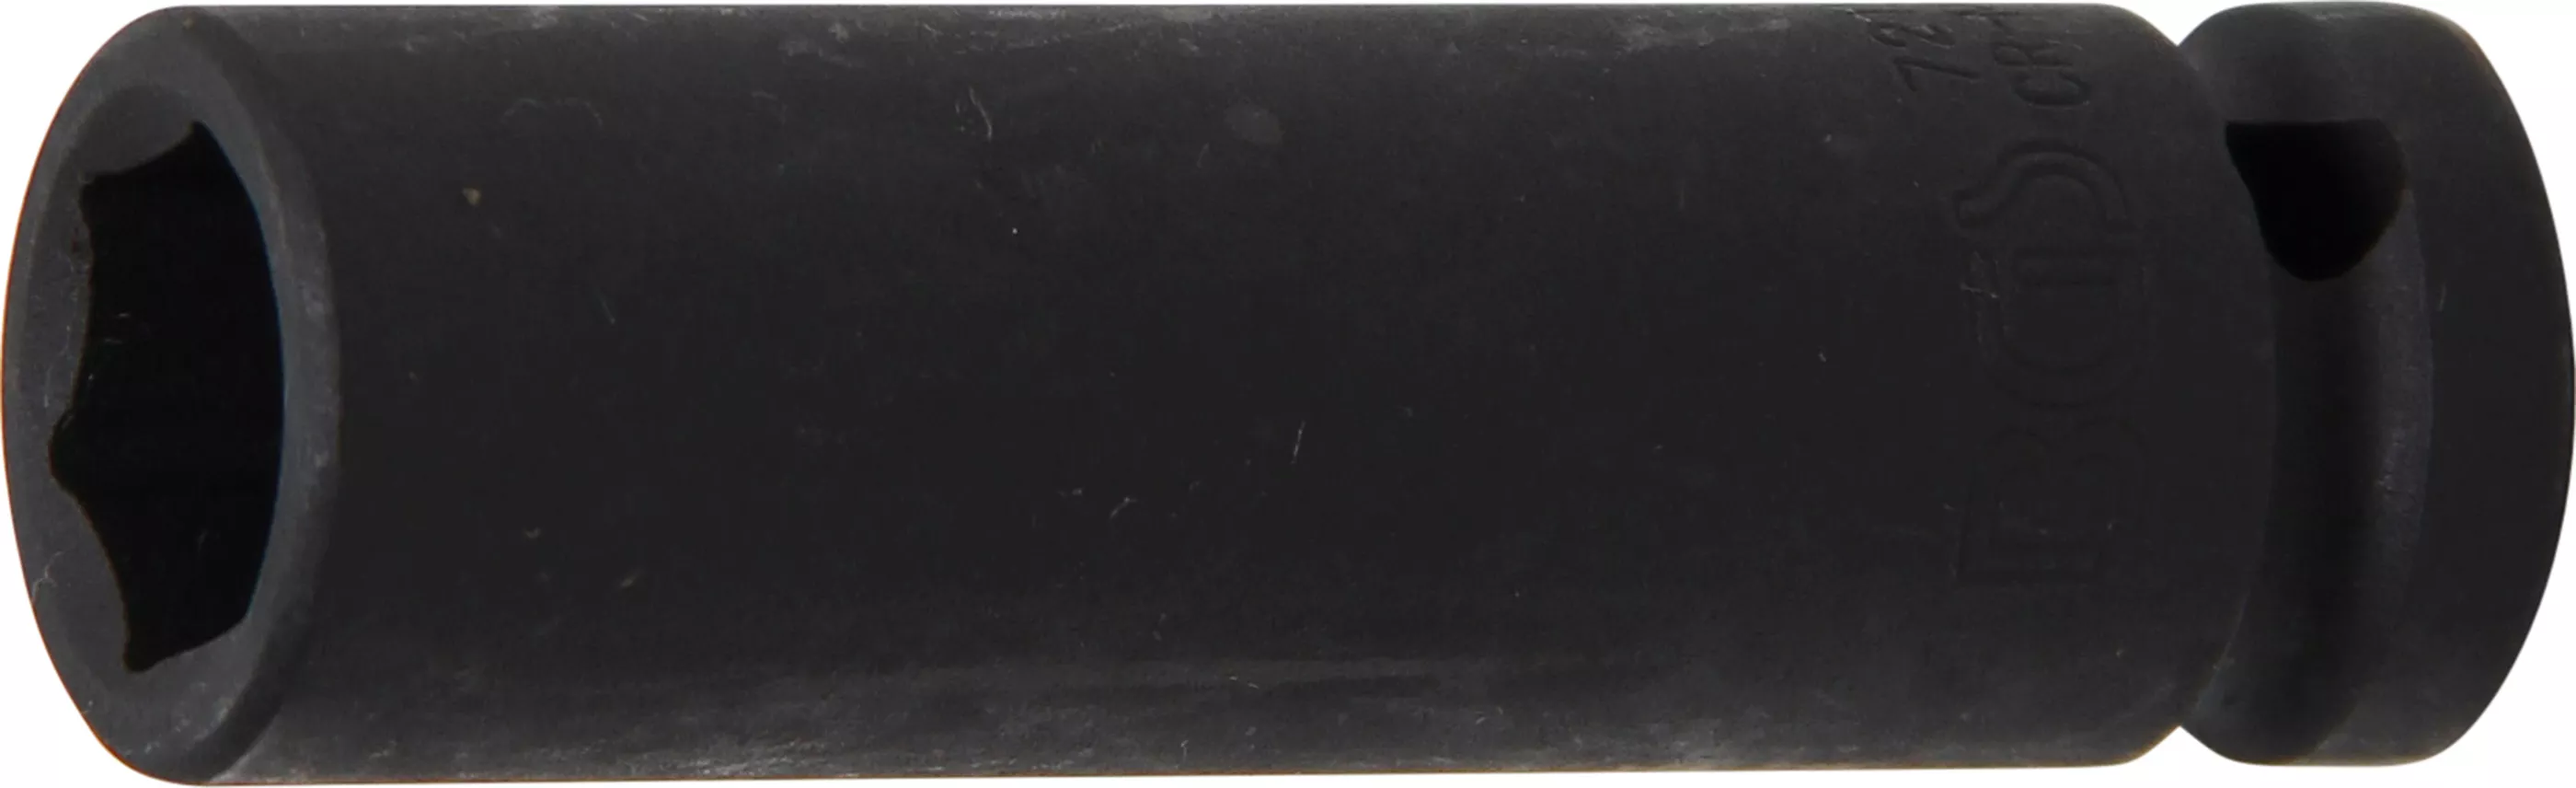 Rázový nástrčný klíč, šestihranný, 1/2", 15 mm - B7215